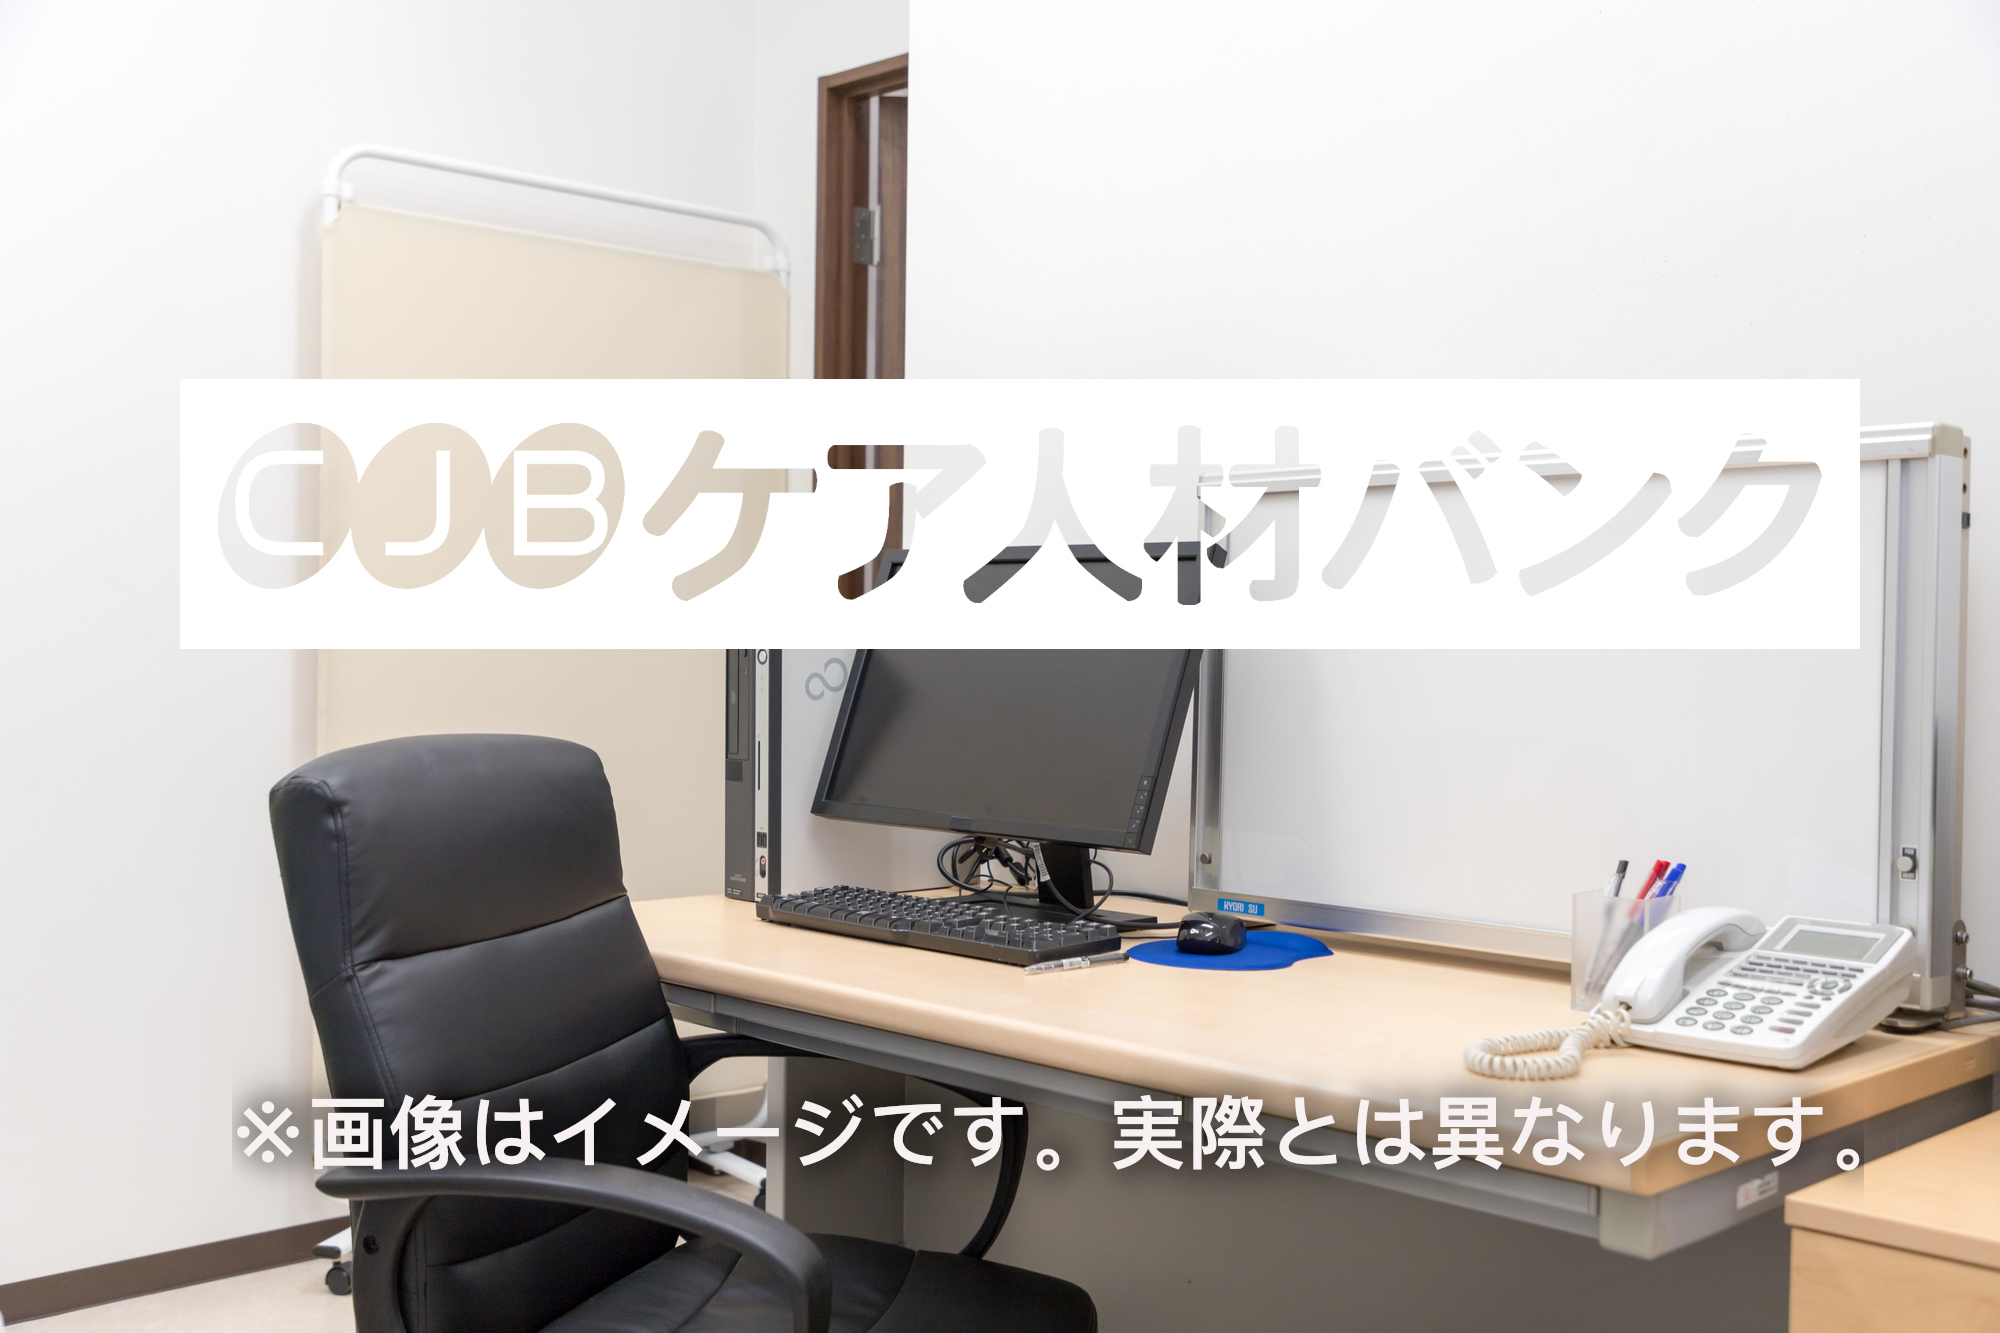 新潟県村上市・介護医療院 介護支援専門員（ケアマネージャー）の非公開求人情報(C41683)のイメージ画像